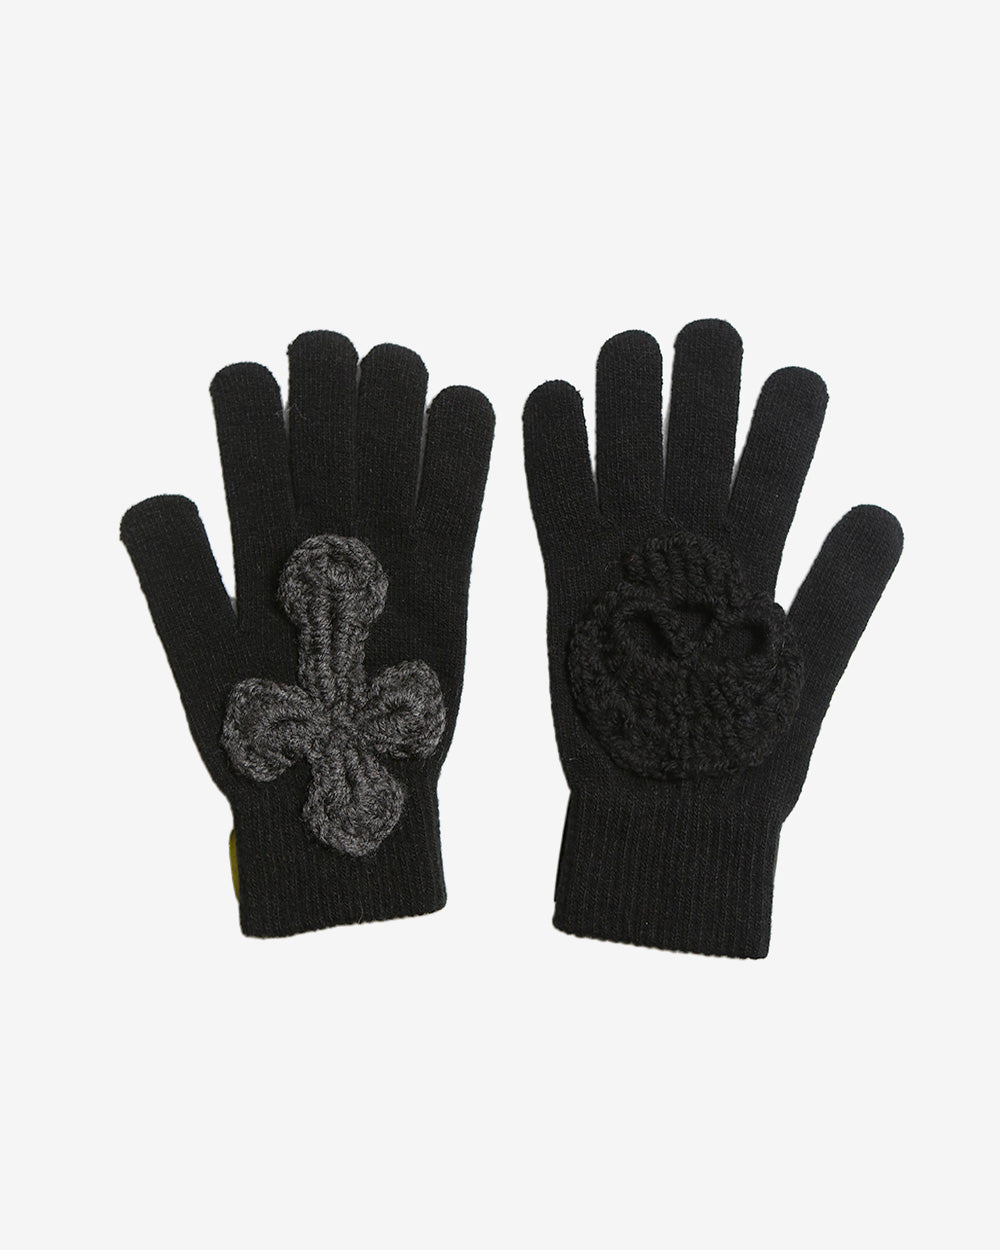 Hand Knitting Gloves